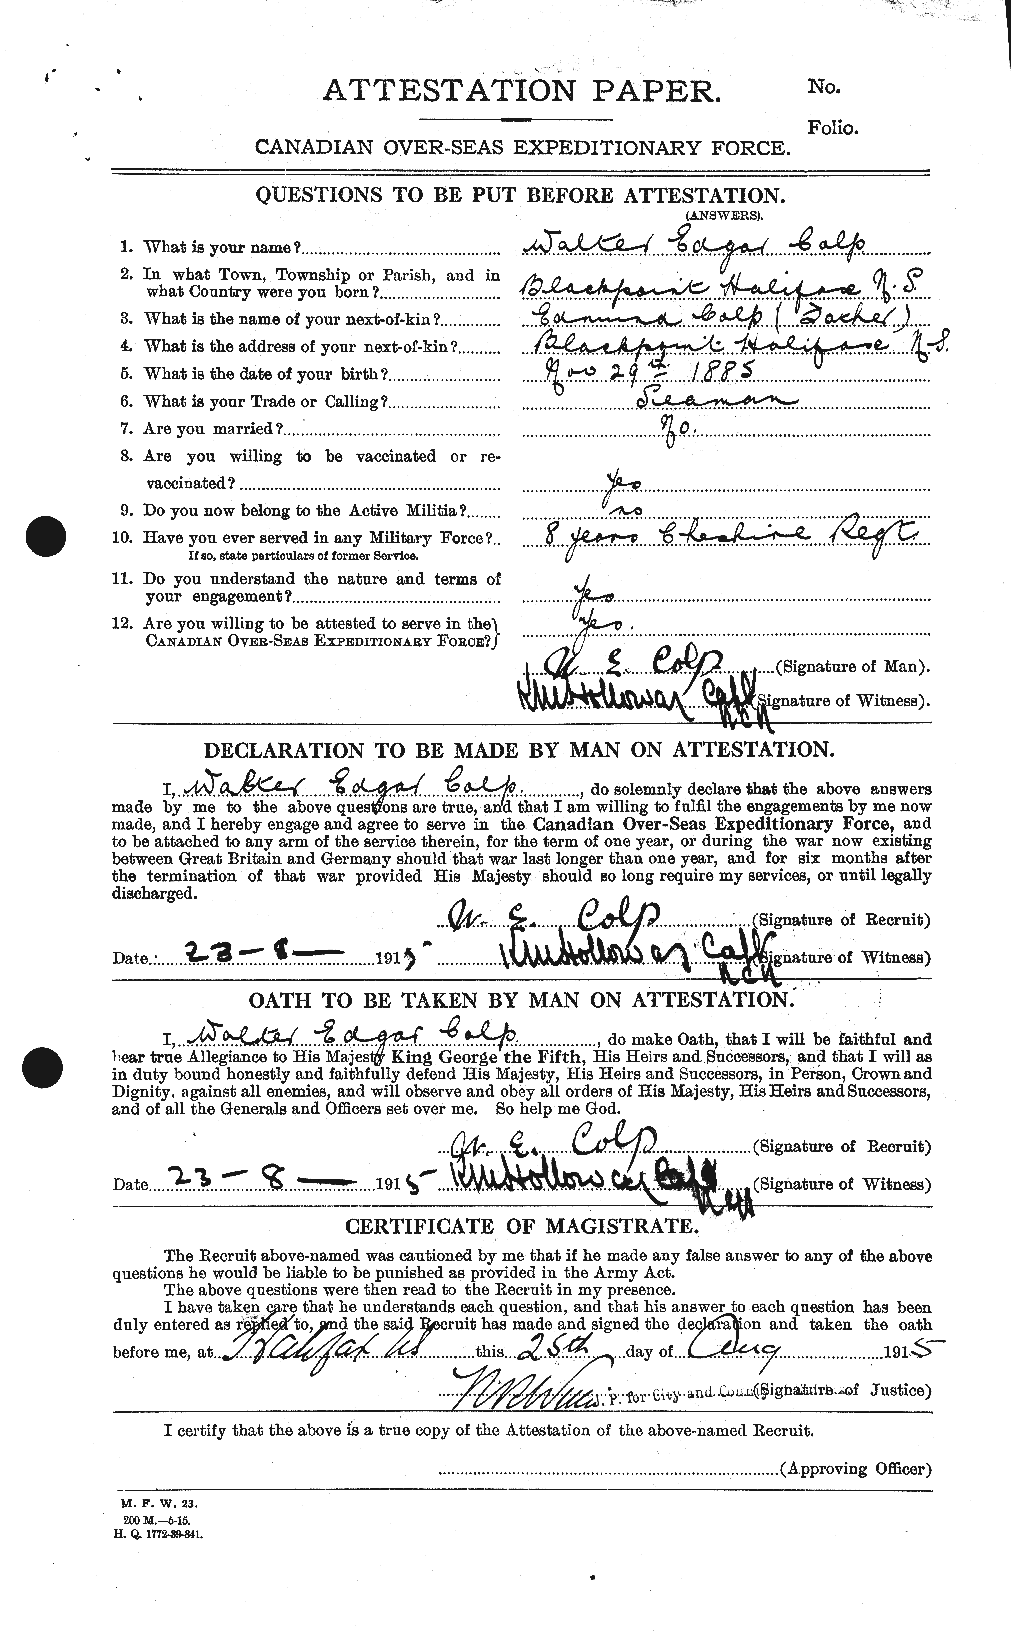 Dossiers du Personnel de la Première Guerre mondiale - CEC 067445a